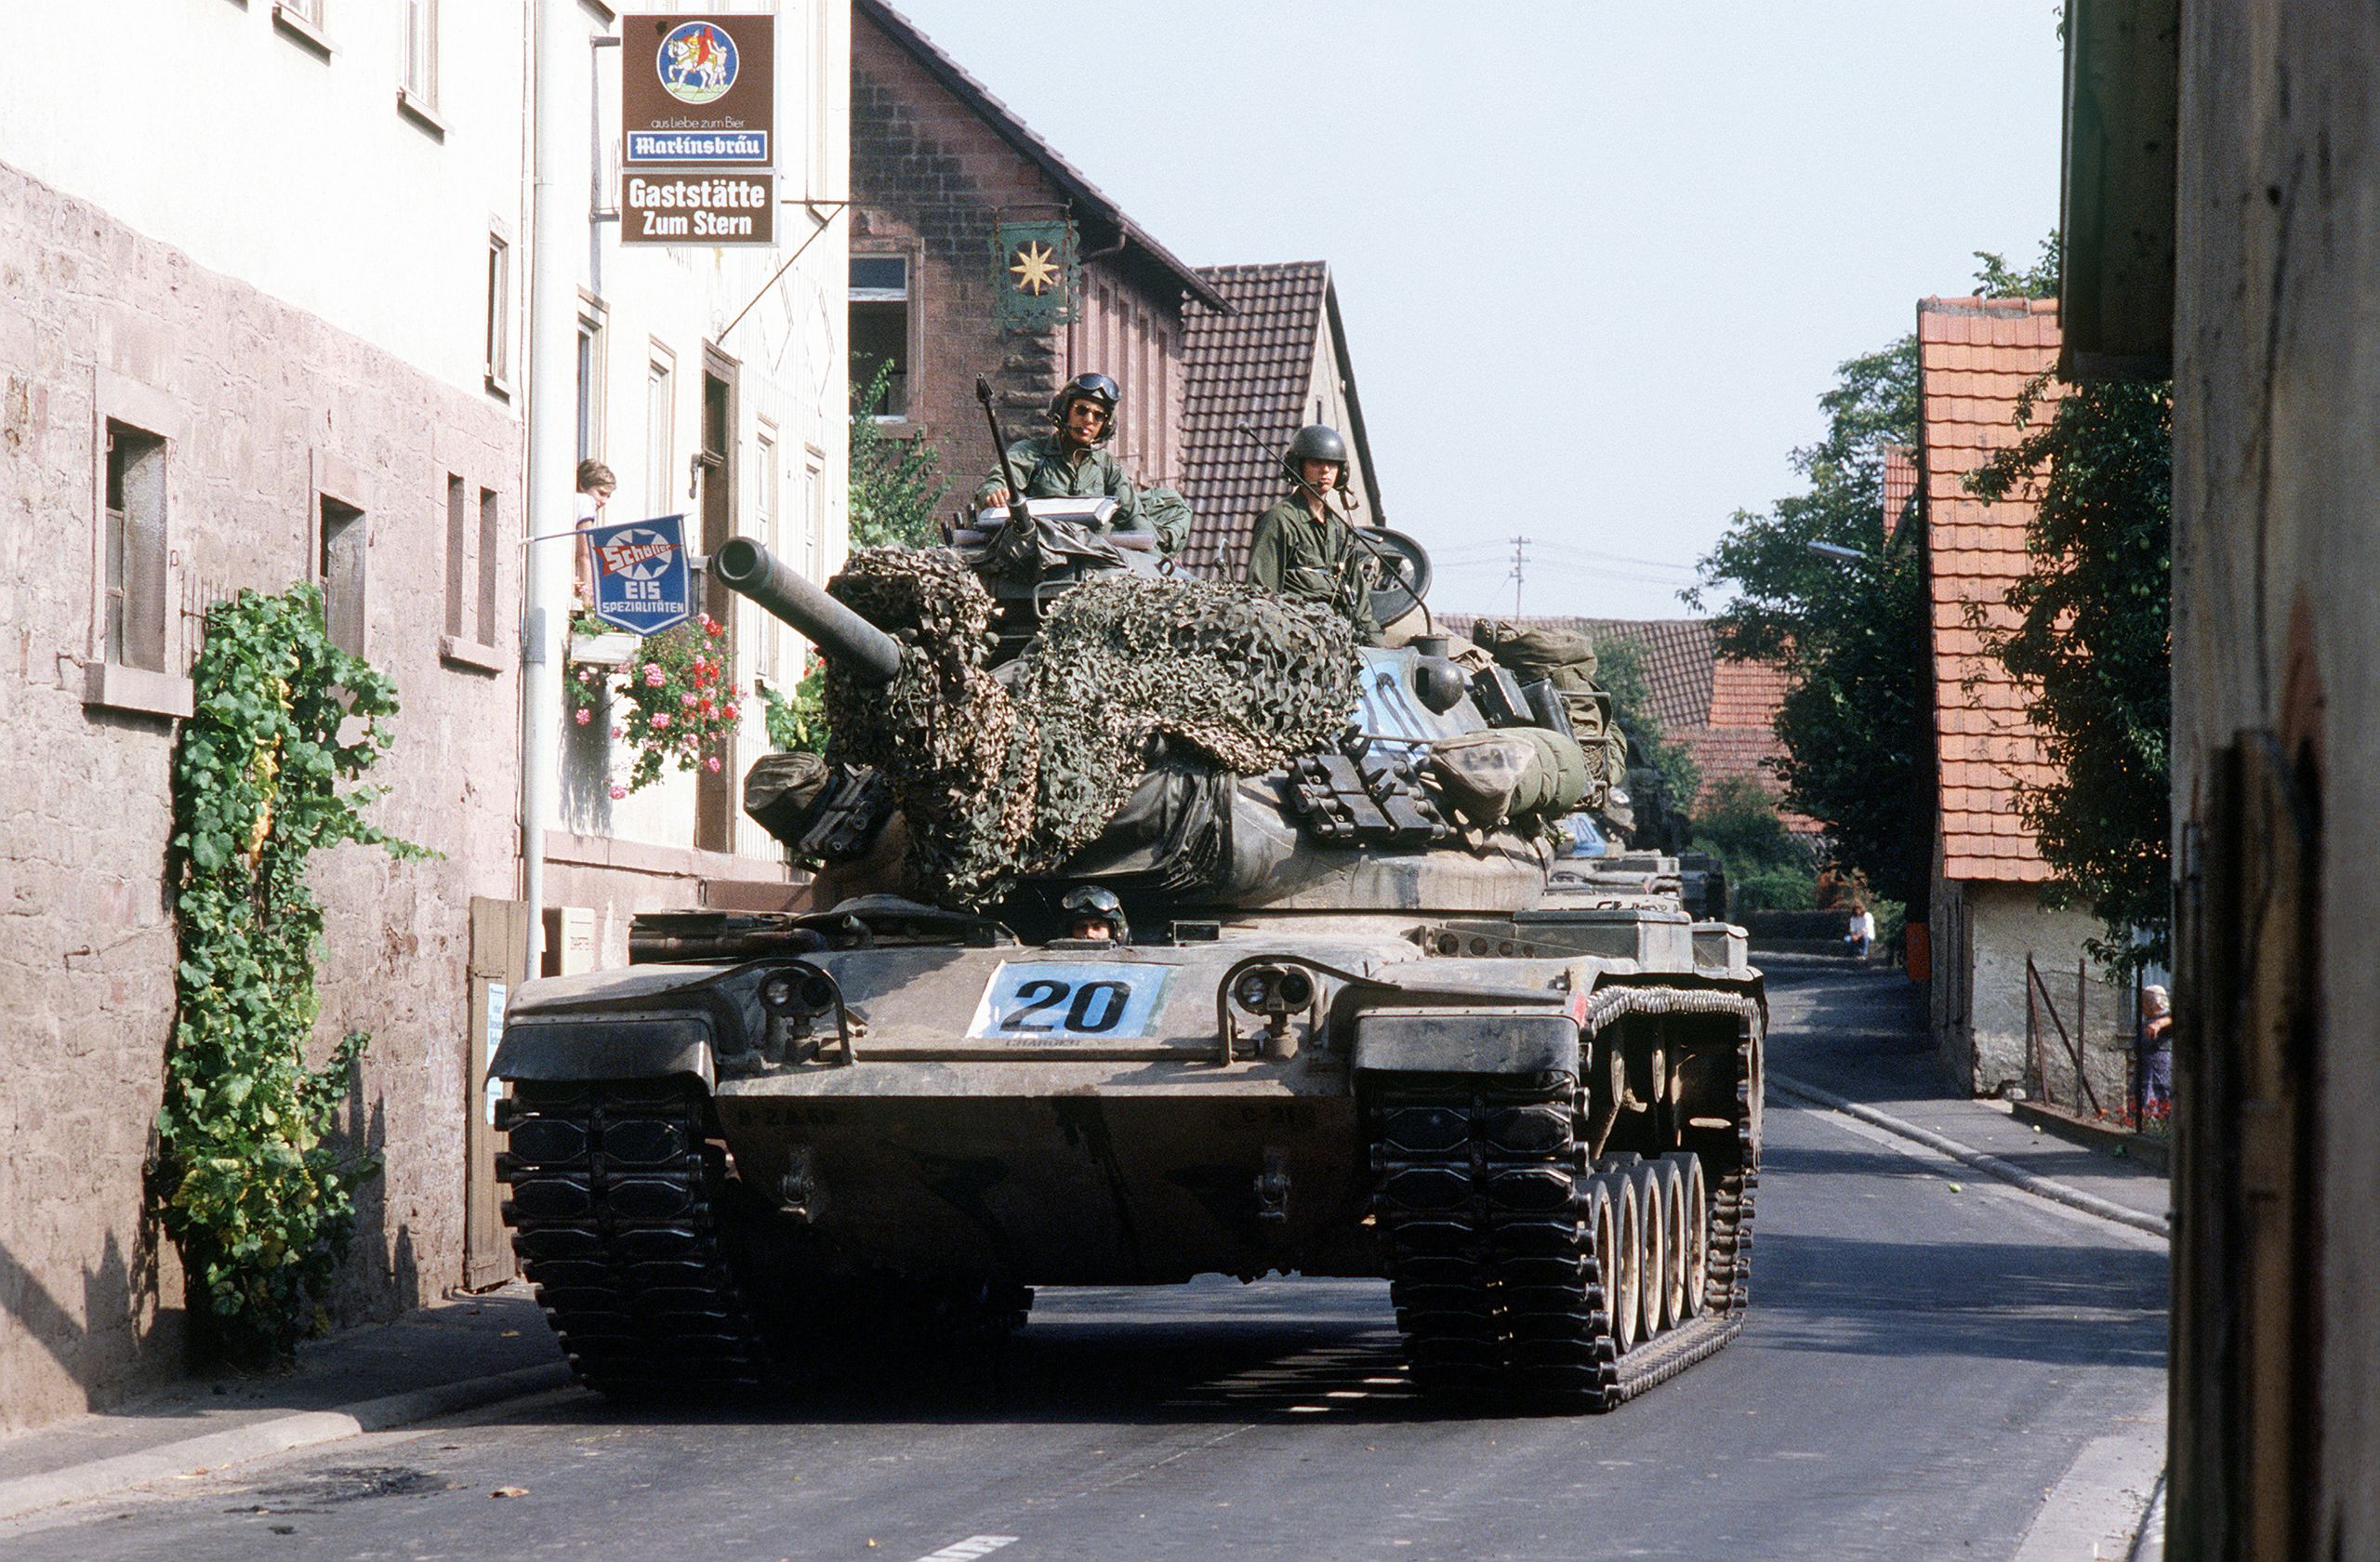 US_Army_M60_tank_in_German_village.jpg